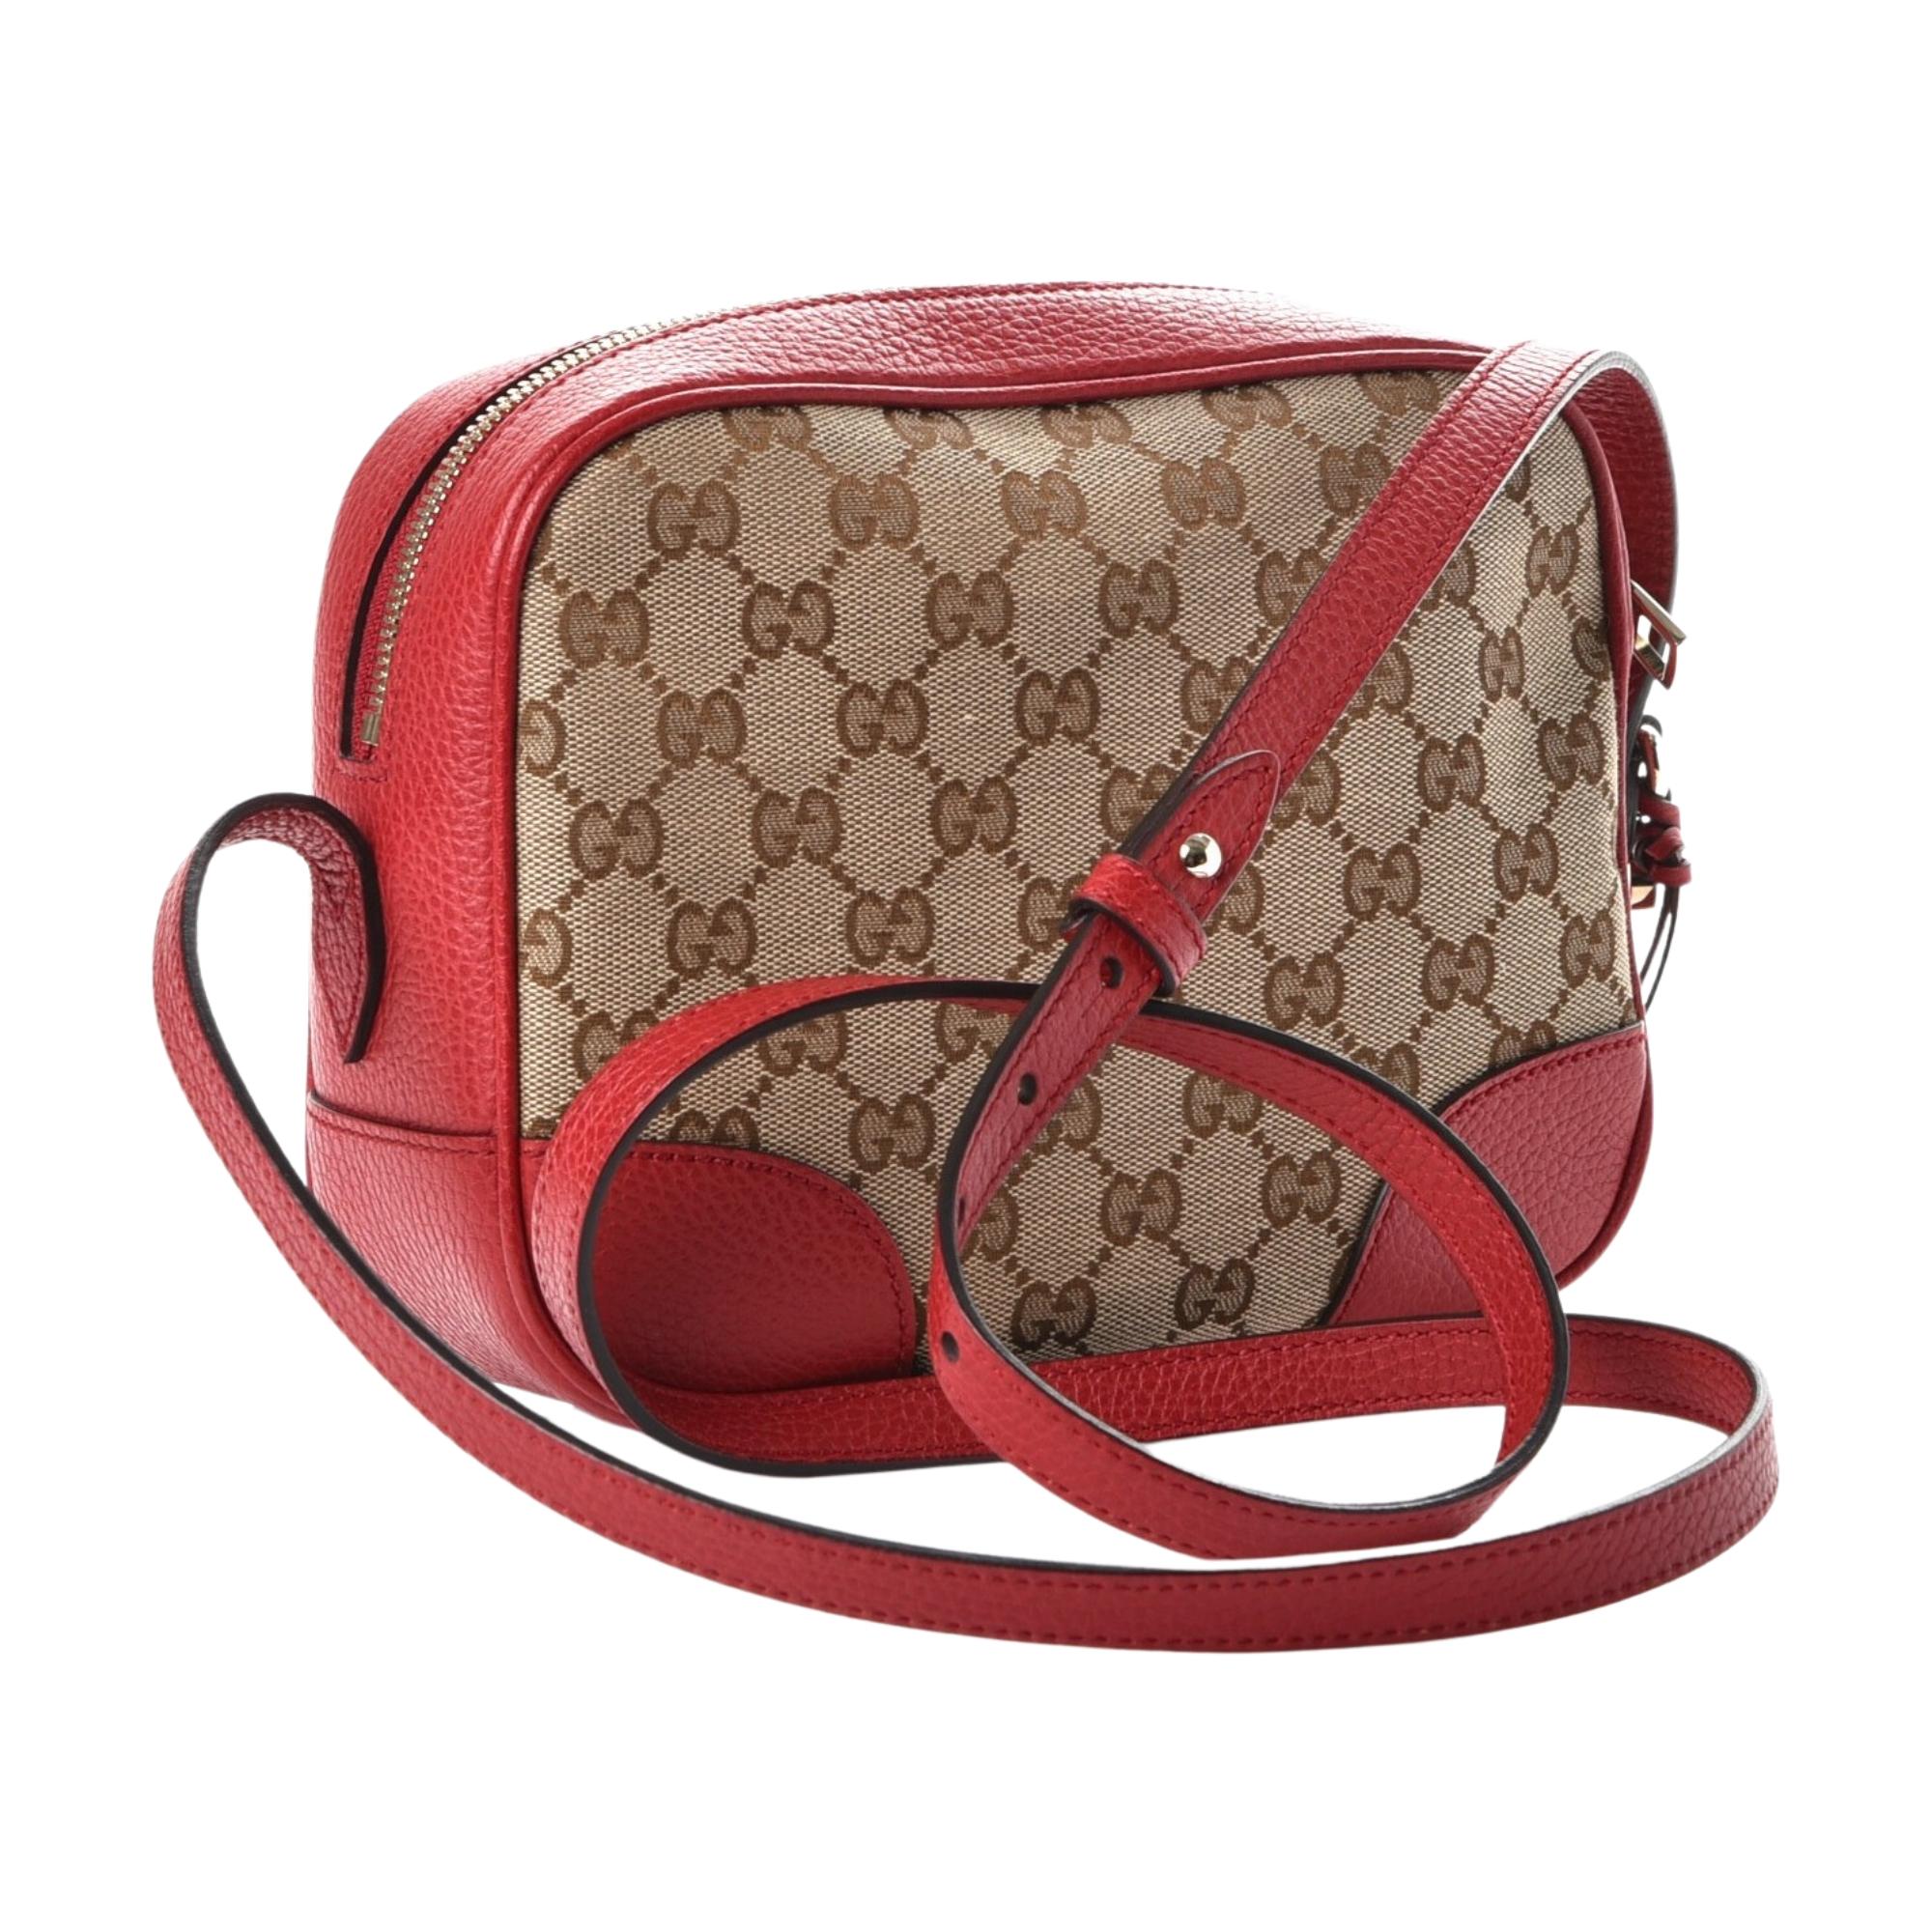 Ce sac cross-body Gucci est composé du monogramme original marron et beige avec des finitions en cuir rouge. Le sac est doté d'une bandoulière en cuir avec boutons de réglage en or clair et d'un lien décoratif en cuir avec une petite breloque GG à